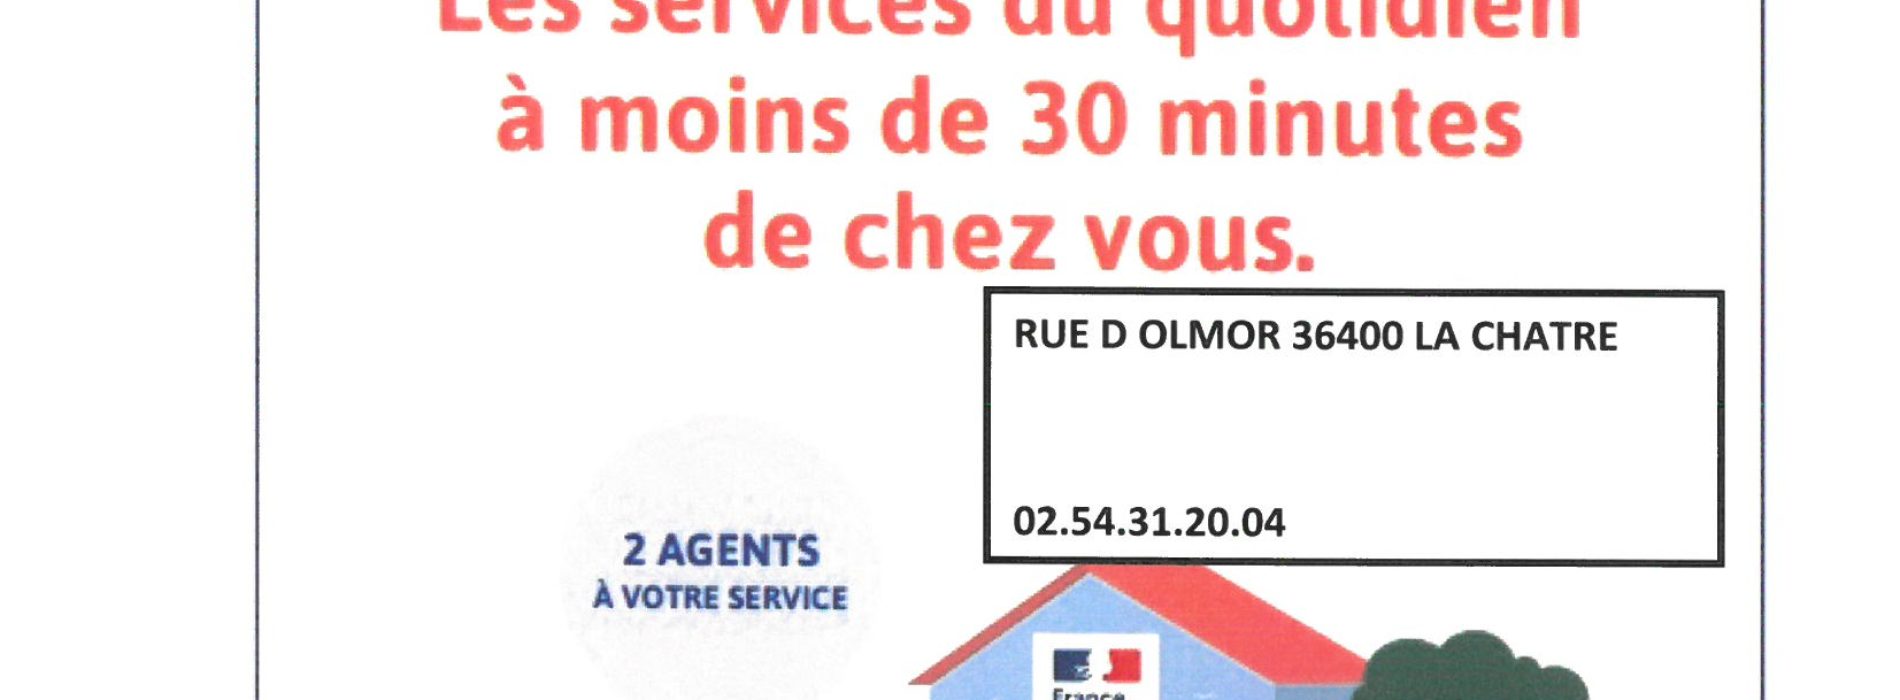 France services : le service public au cœur des territoires.